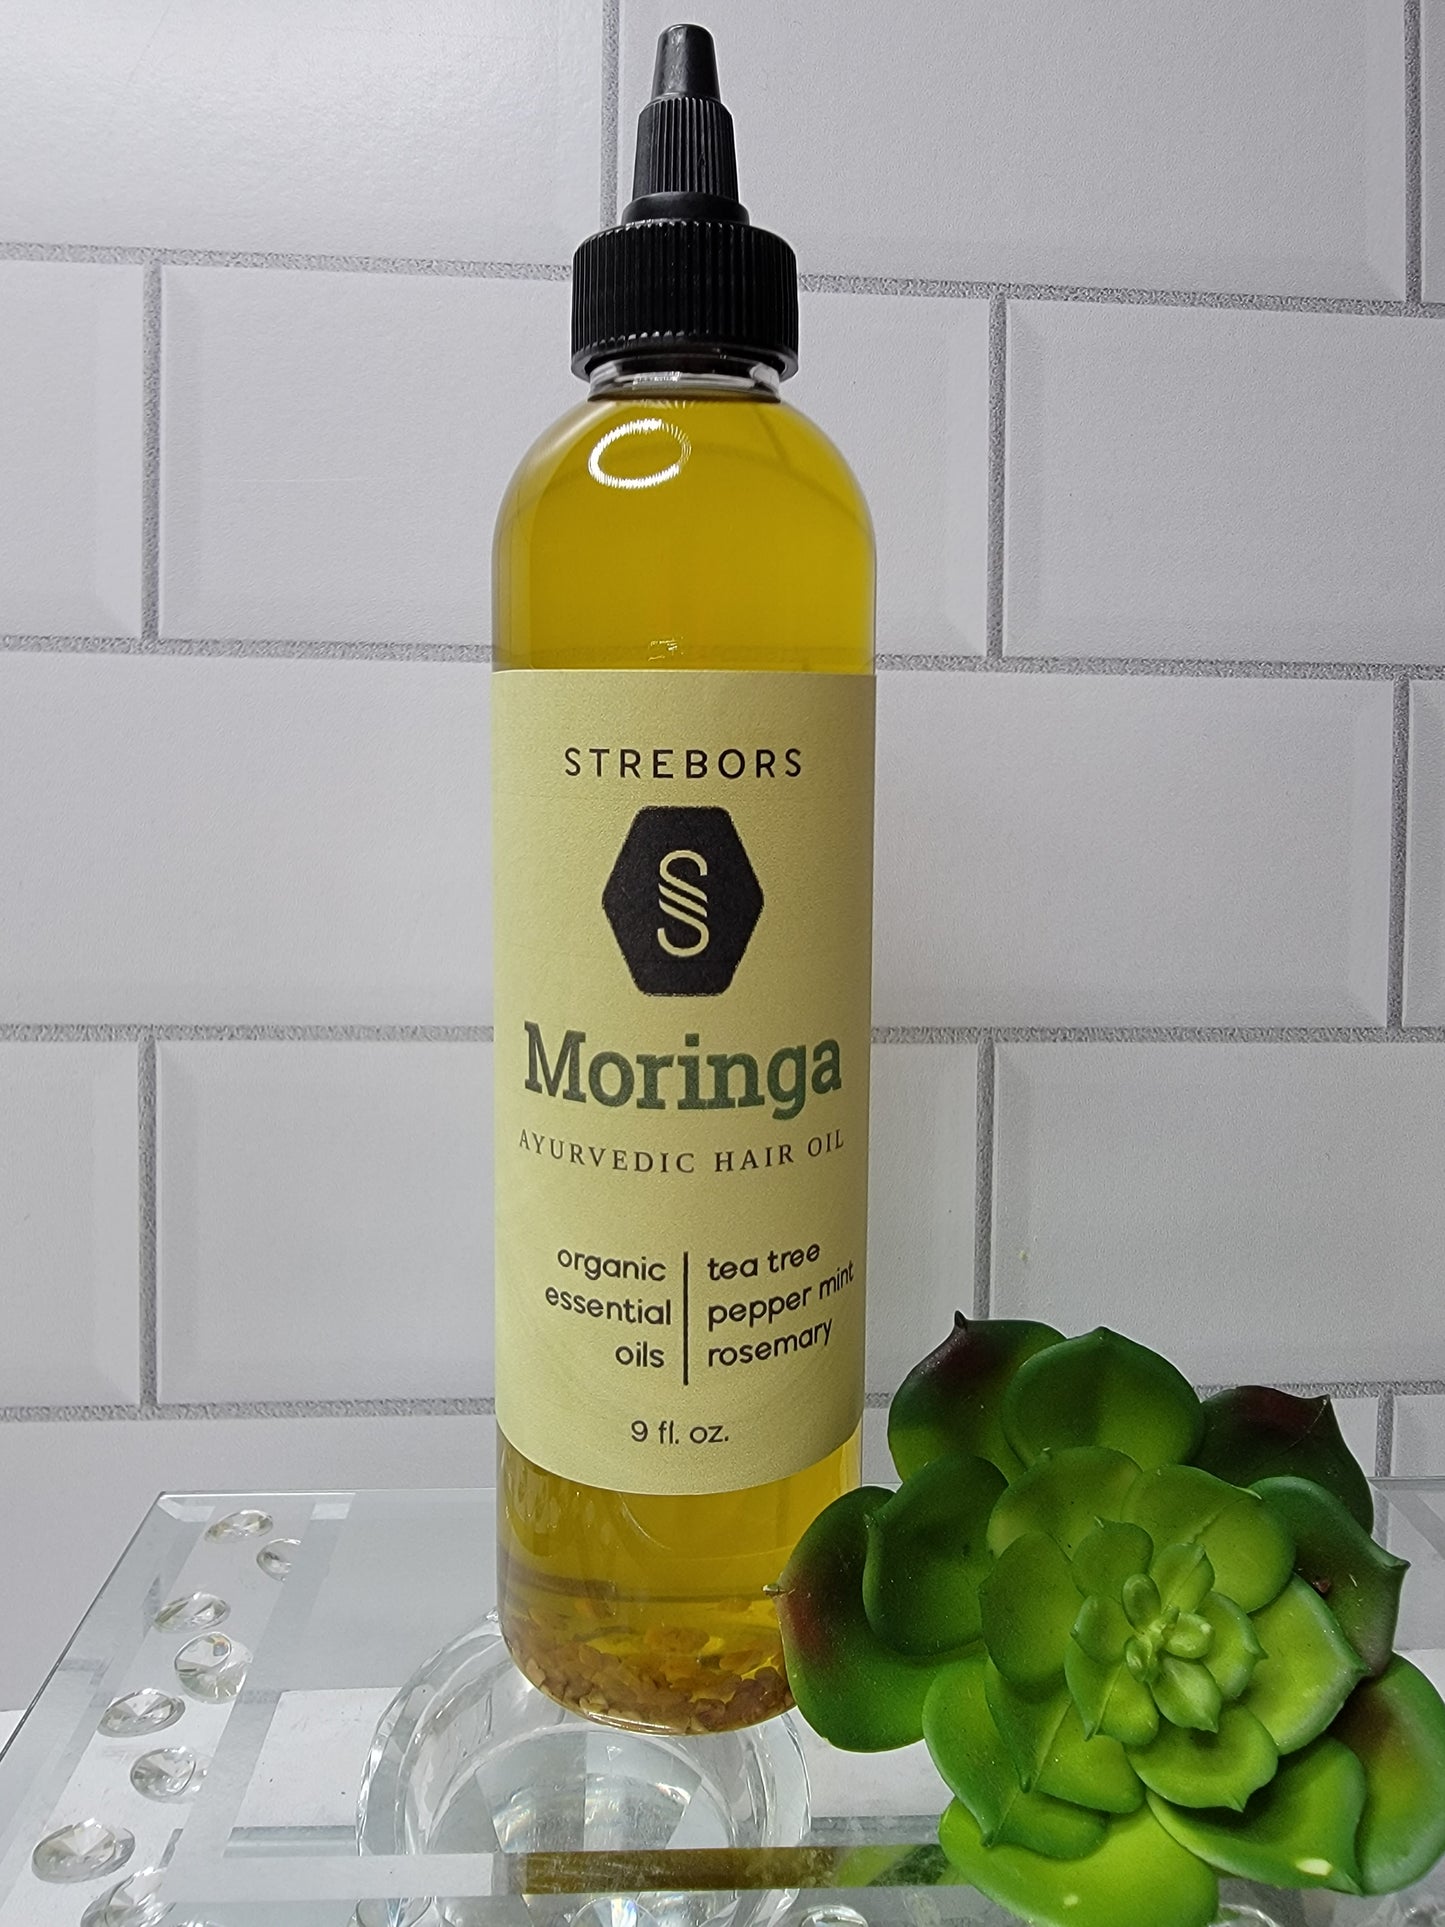 9 oz bottle of Moringa Hair Oil